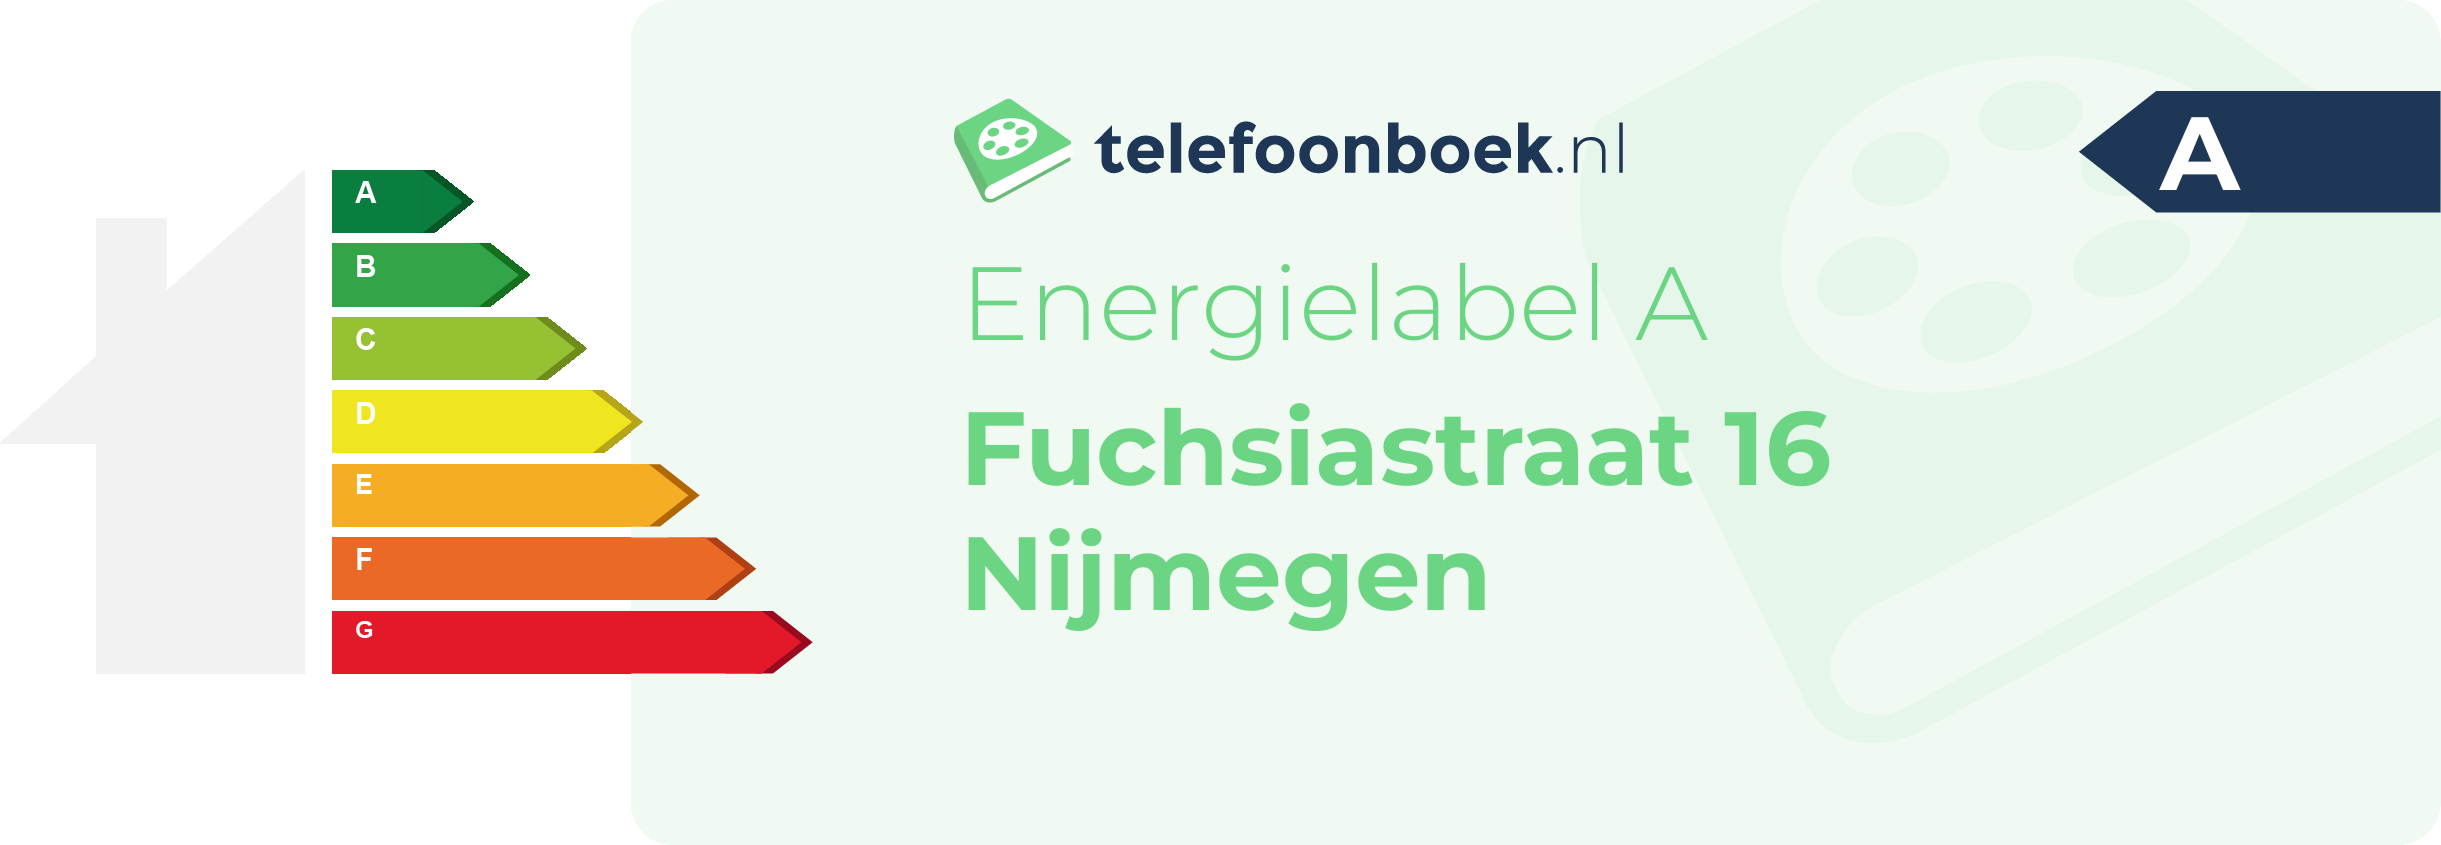 Energielabel Fuchsiastraat 16 Nijmegen